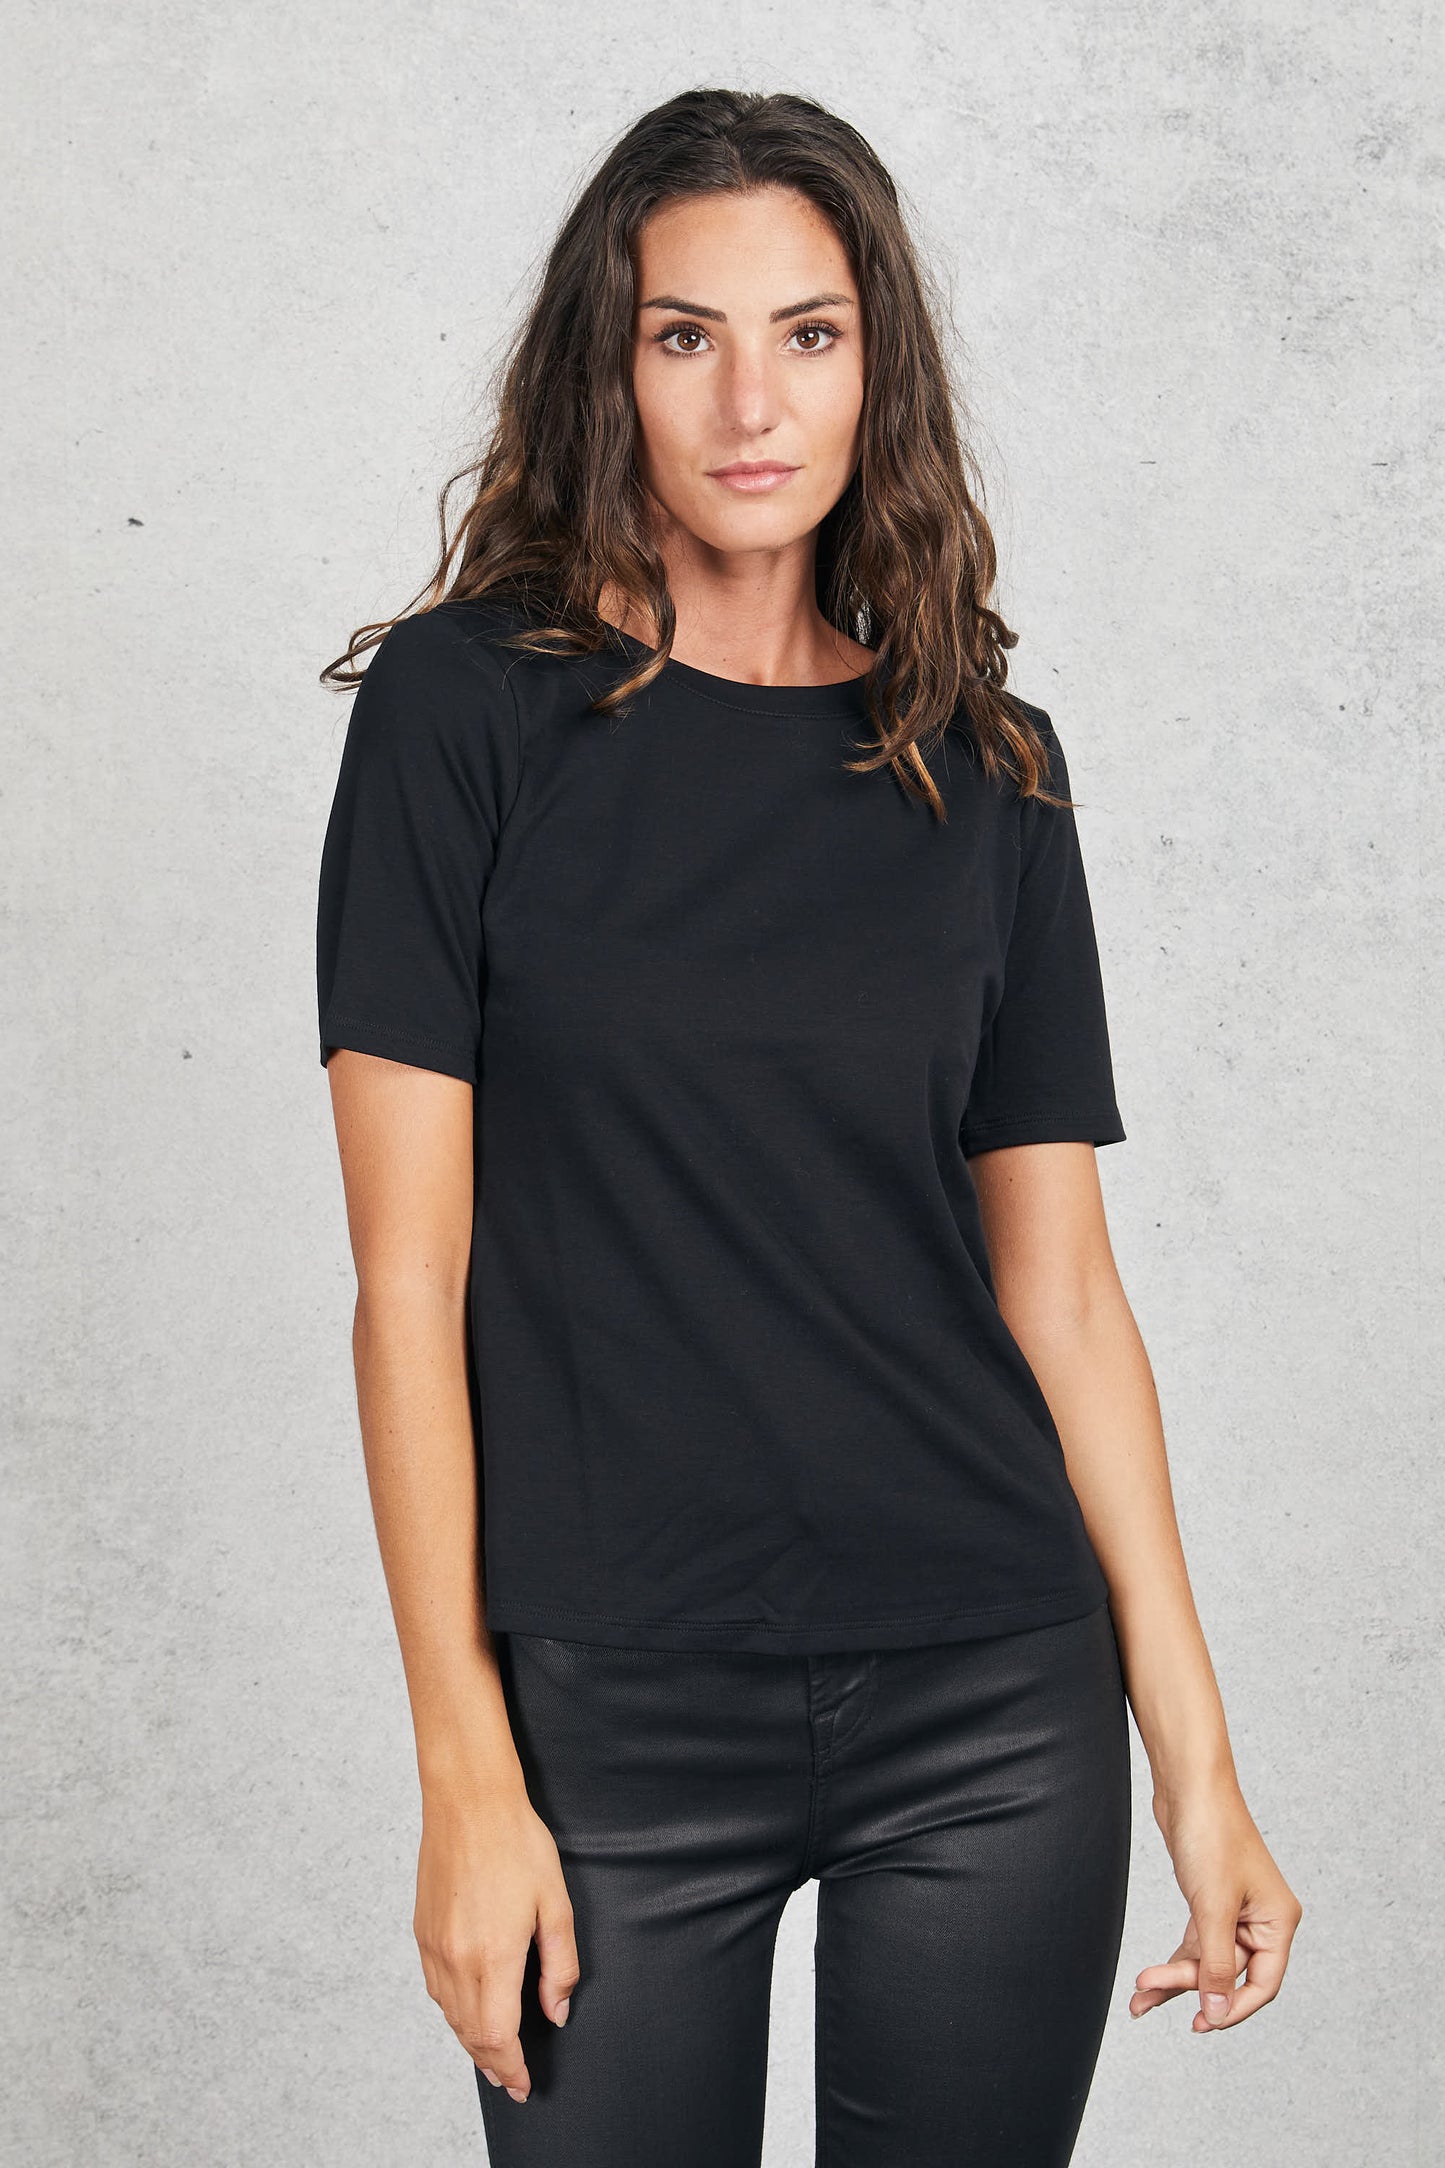  Purotatto Round Collar T-shirt Sleevs Black Women Nero Donna - 1